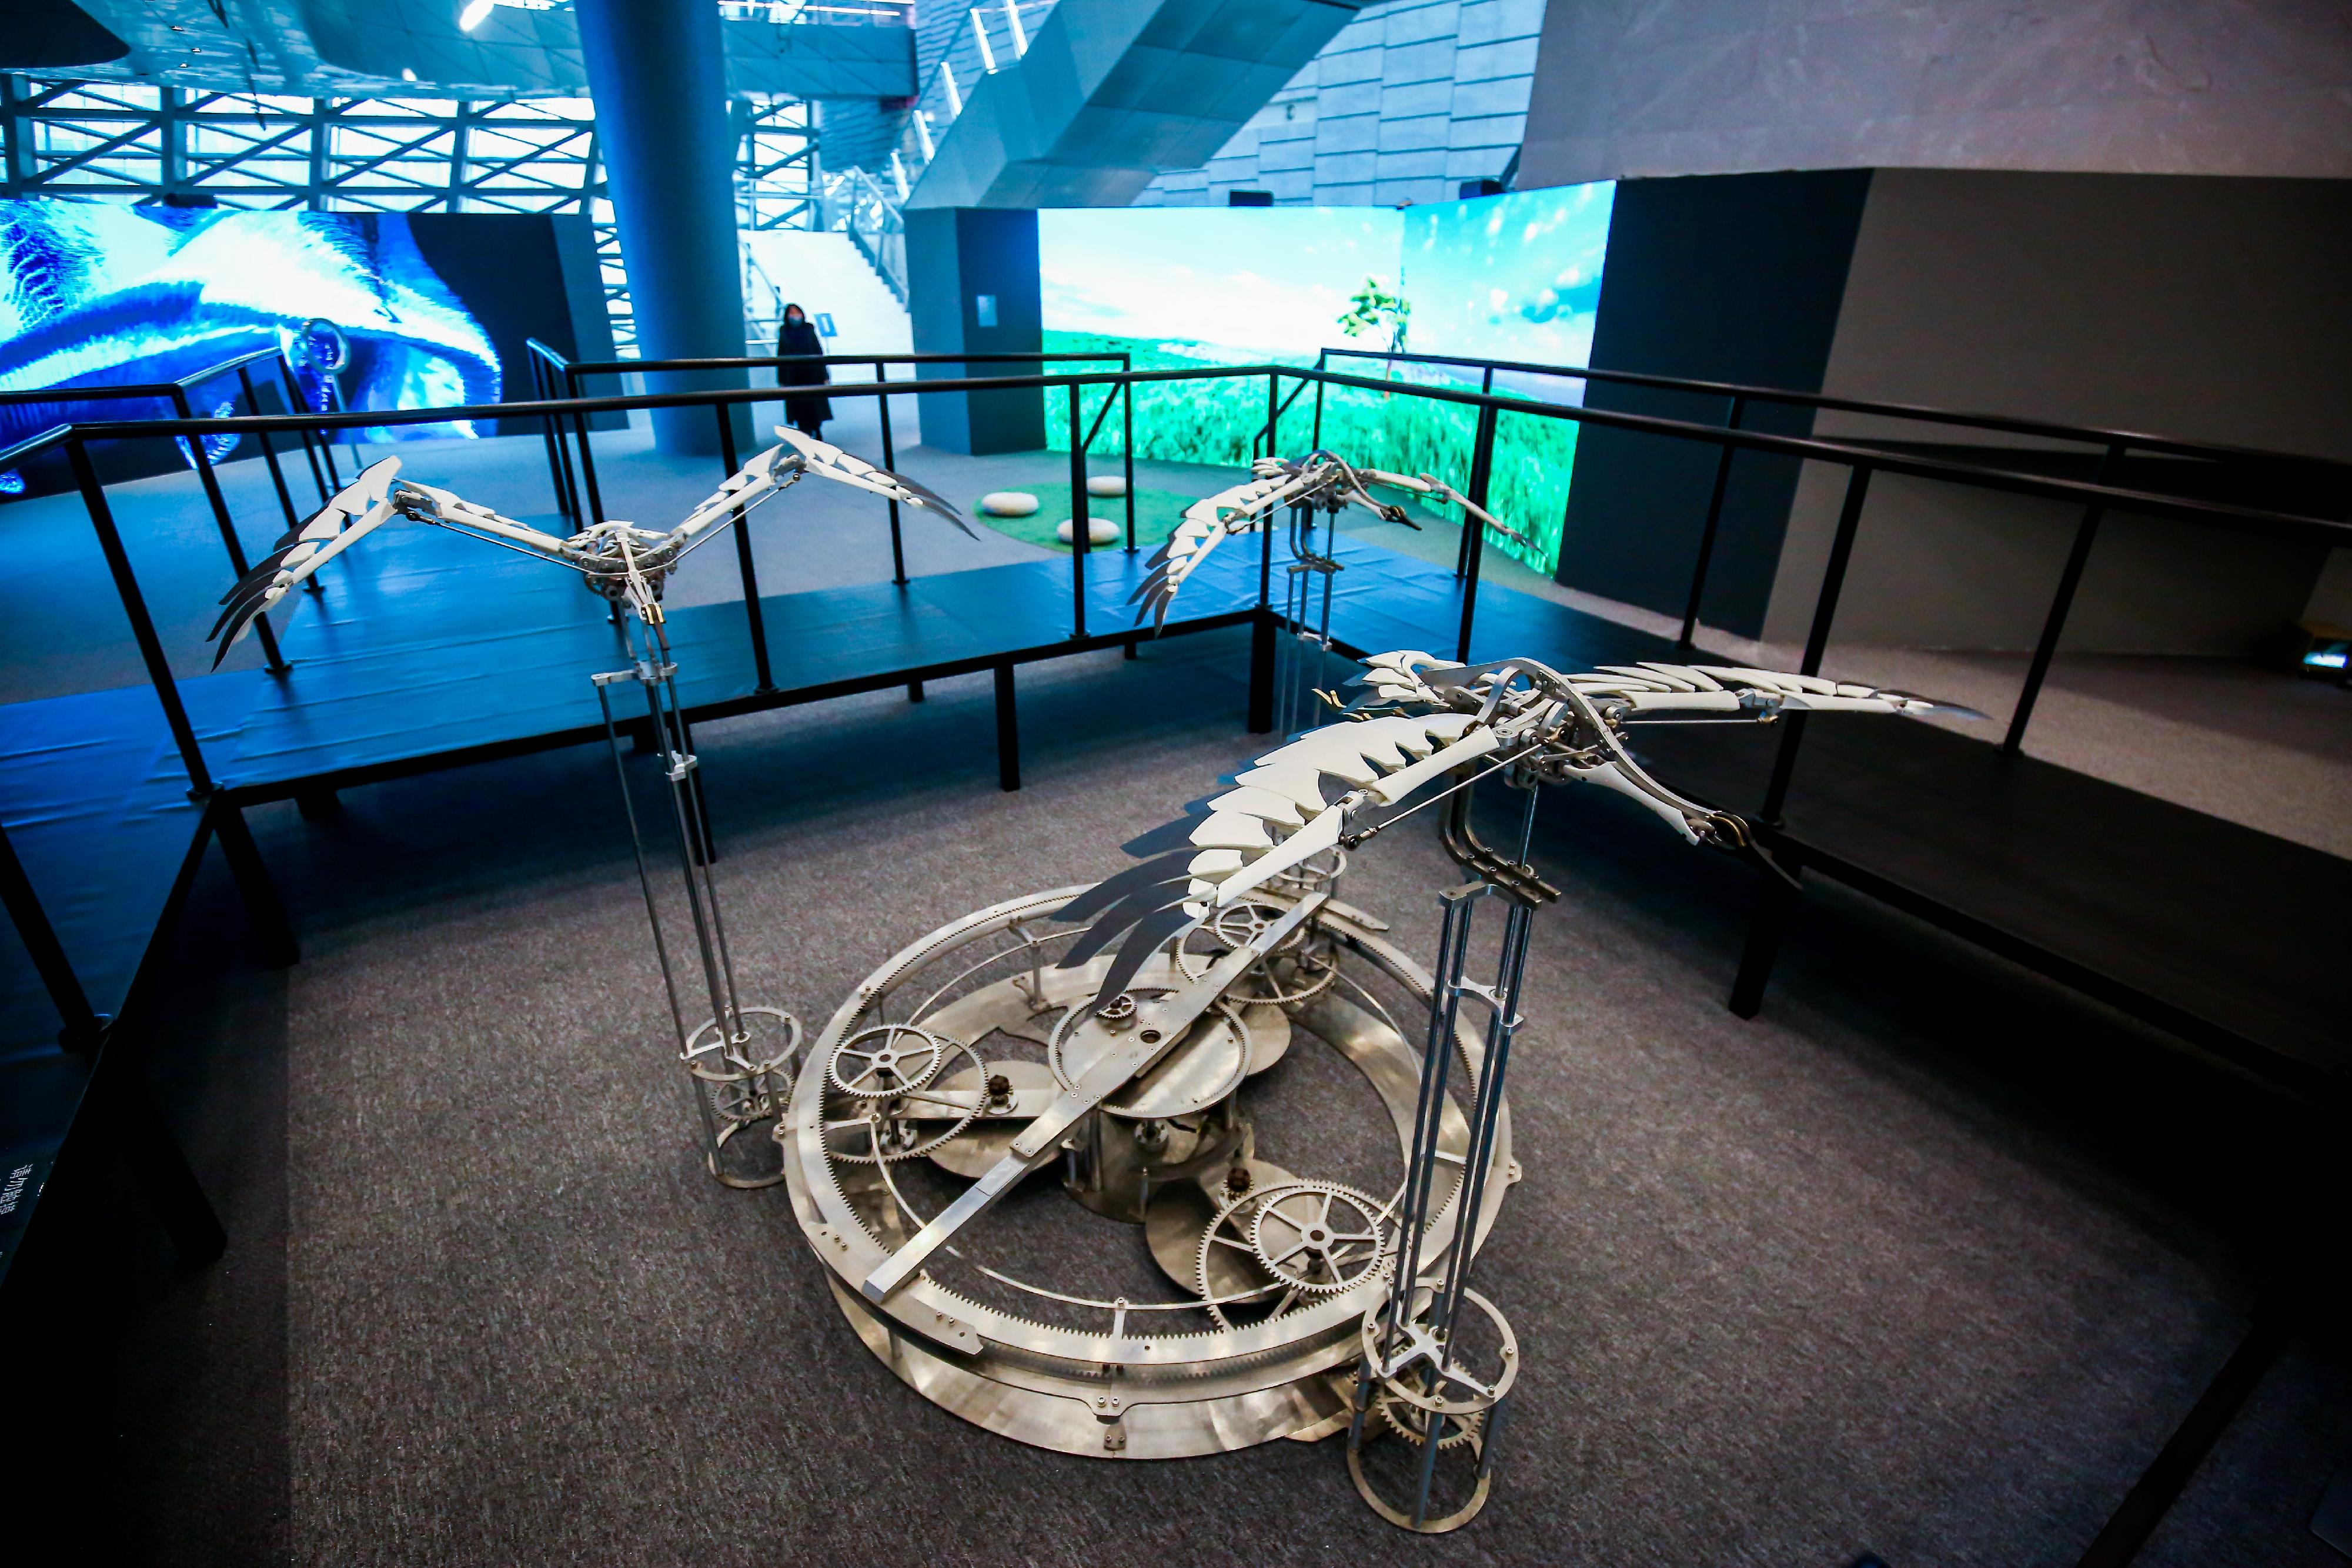 「2022港澳視覺藝術雙年展」深圳站展覽於深圳市當代藝術與城市規劃館舉行。圖示香港藝術家陳家俊的動態裝置作品《候鳥》，是大型機械鳥裝置，靈感來自大自然的生態。